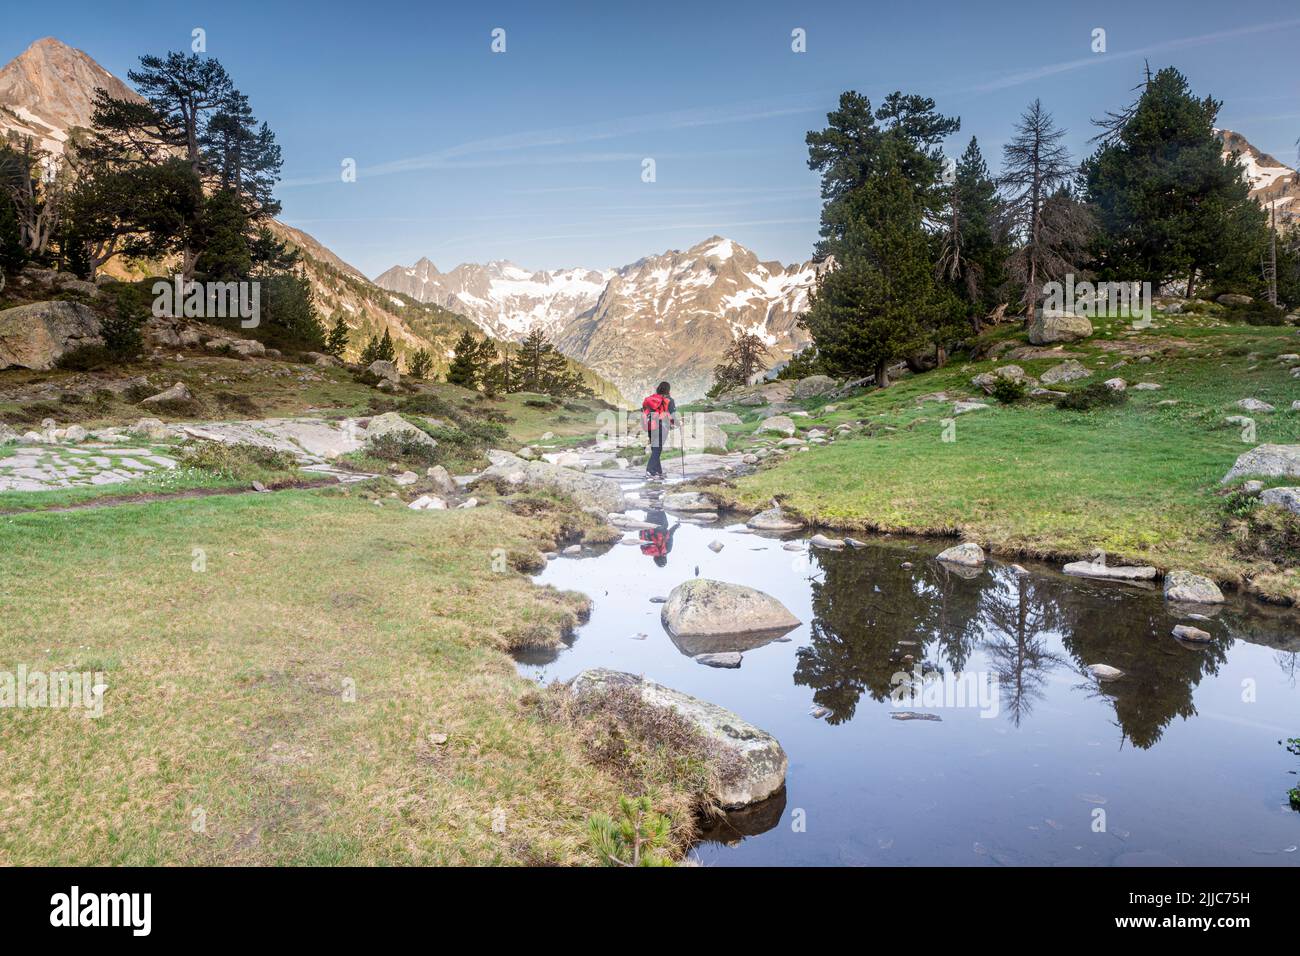 Hiking towards Plan de Aiguallut, Valle de Benasque, Natural Park of Posets-Maladeta, Huesca, Spain Stock Photo